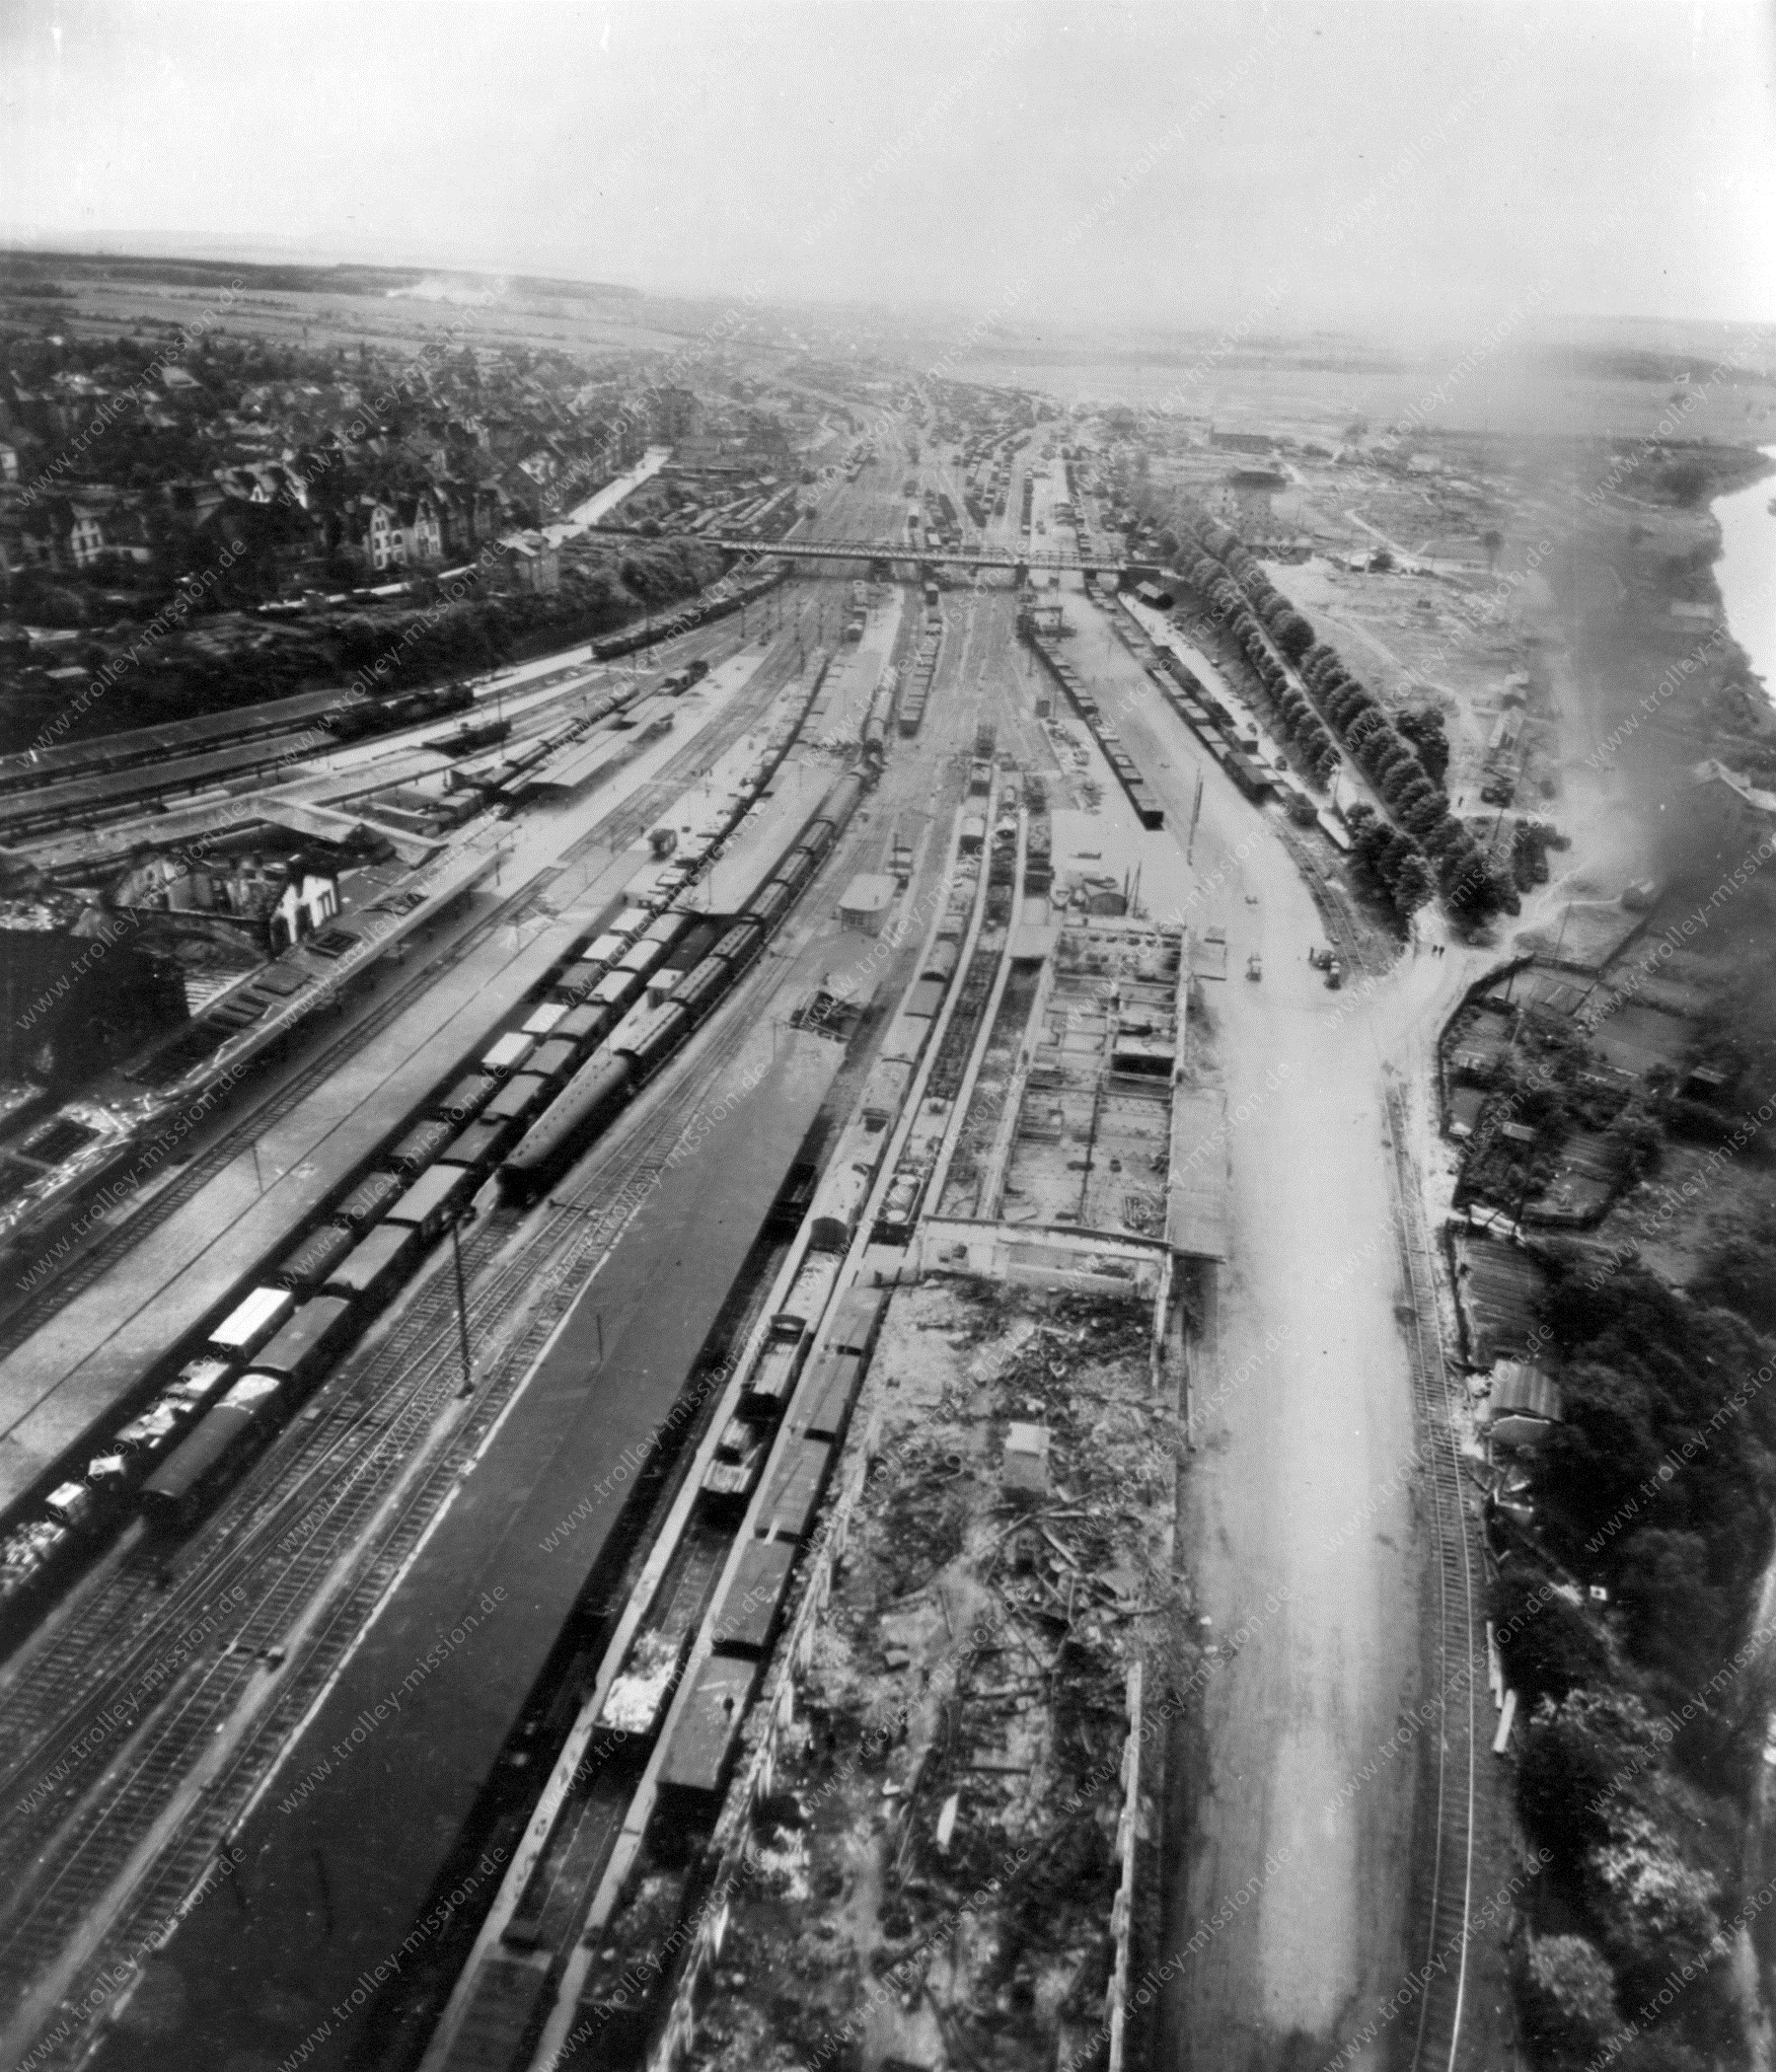 Bahnhof Gießen entlang der Lahnstraße sowie Margaretenhütte - Luftbildserie im Tiefflug nach dem Zweiten Weltkrieg 1945